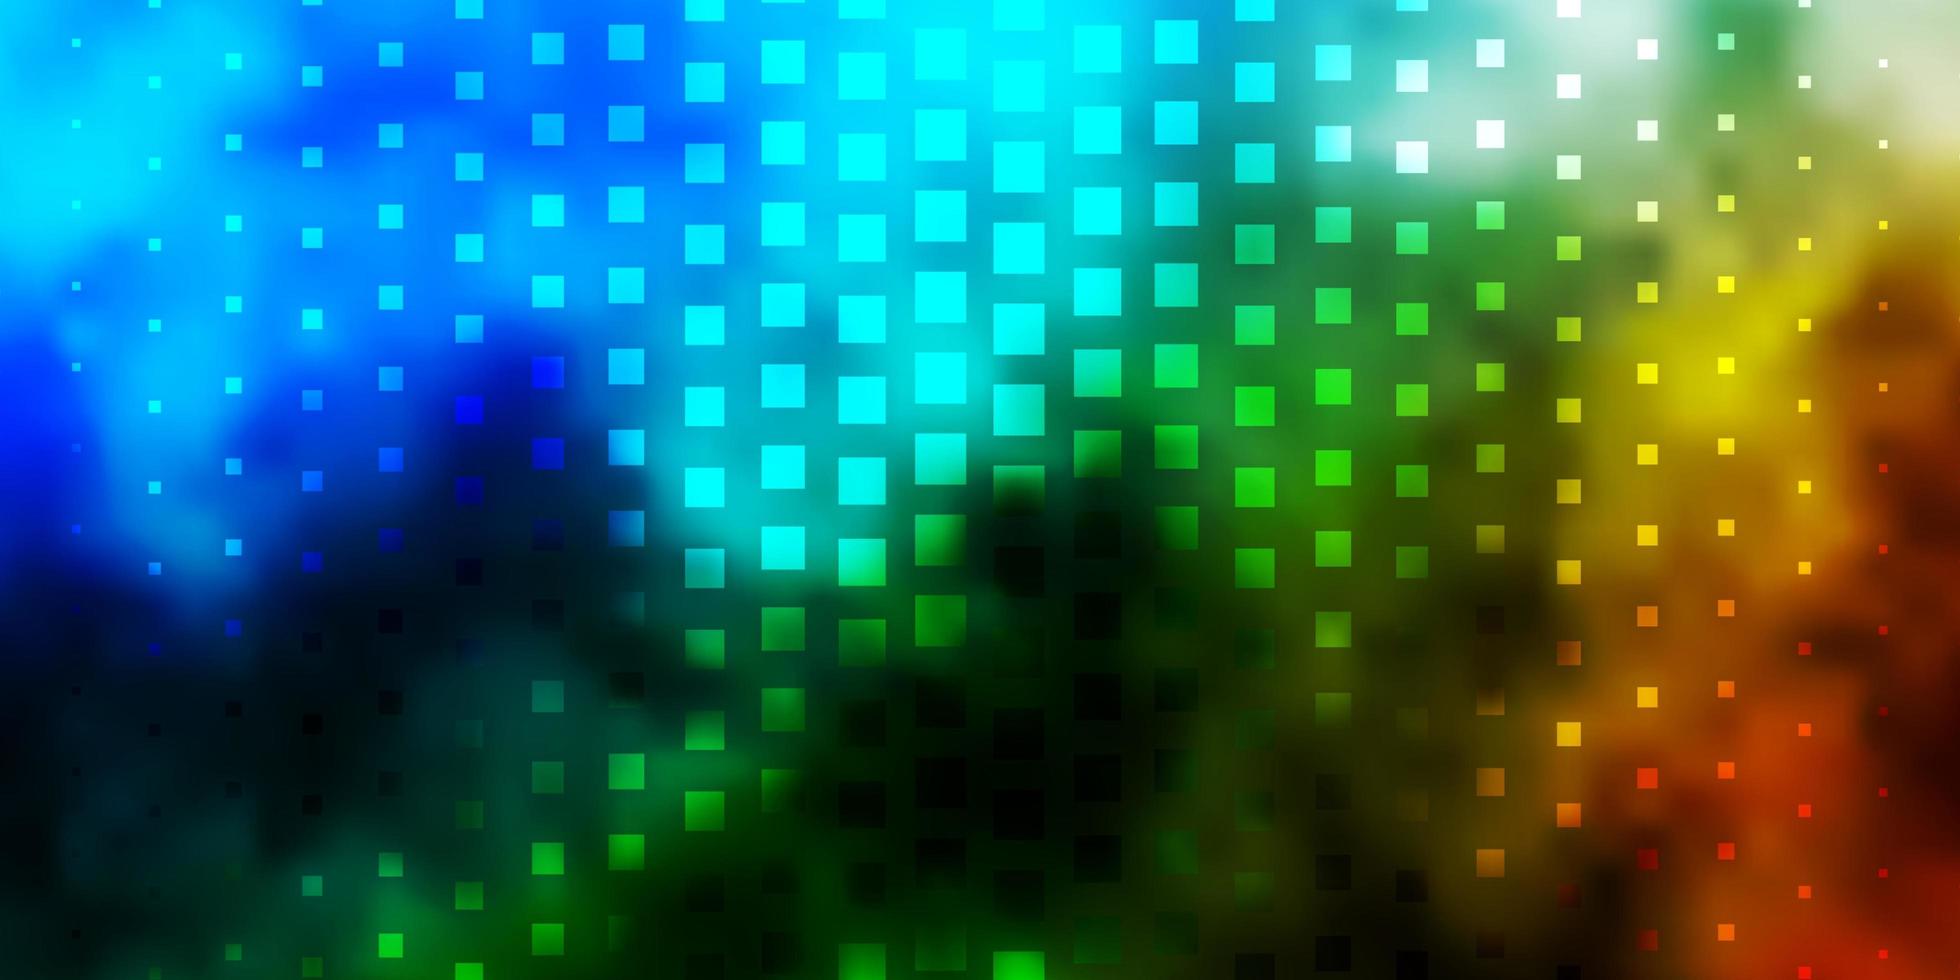 hellblaue, grüne Vektorschablone mit Rechtecken. vektor